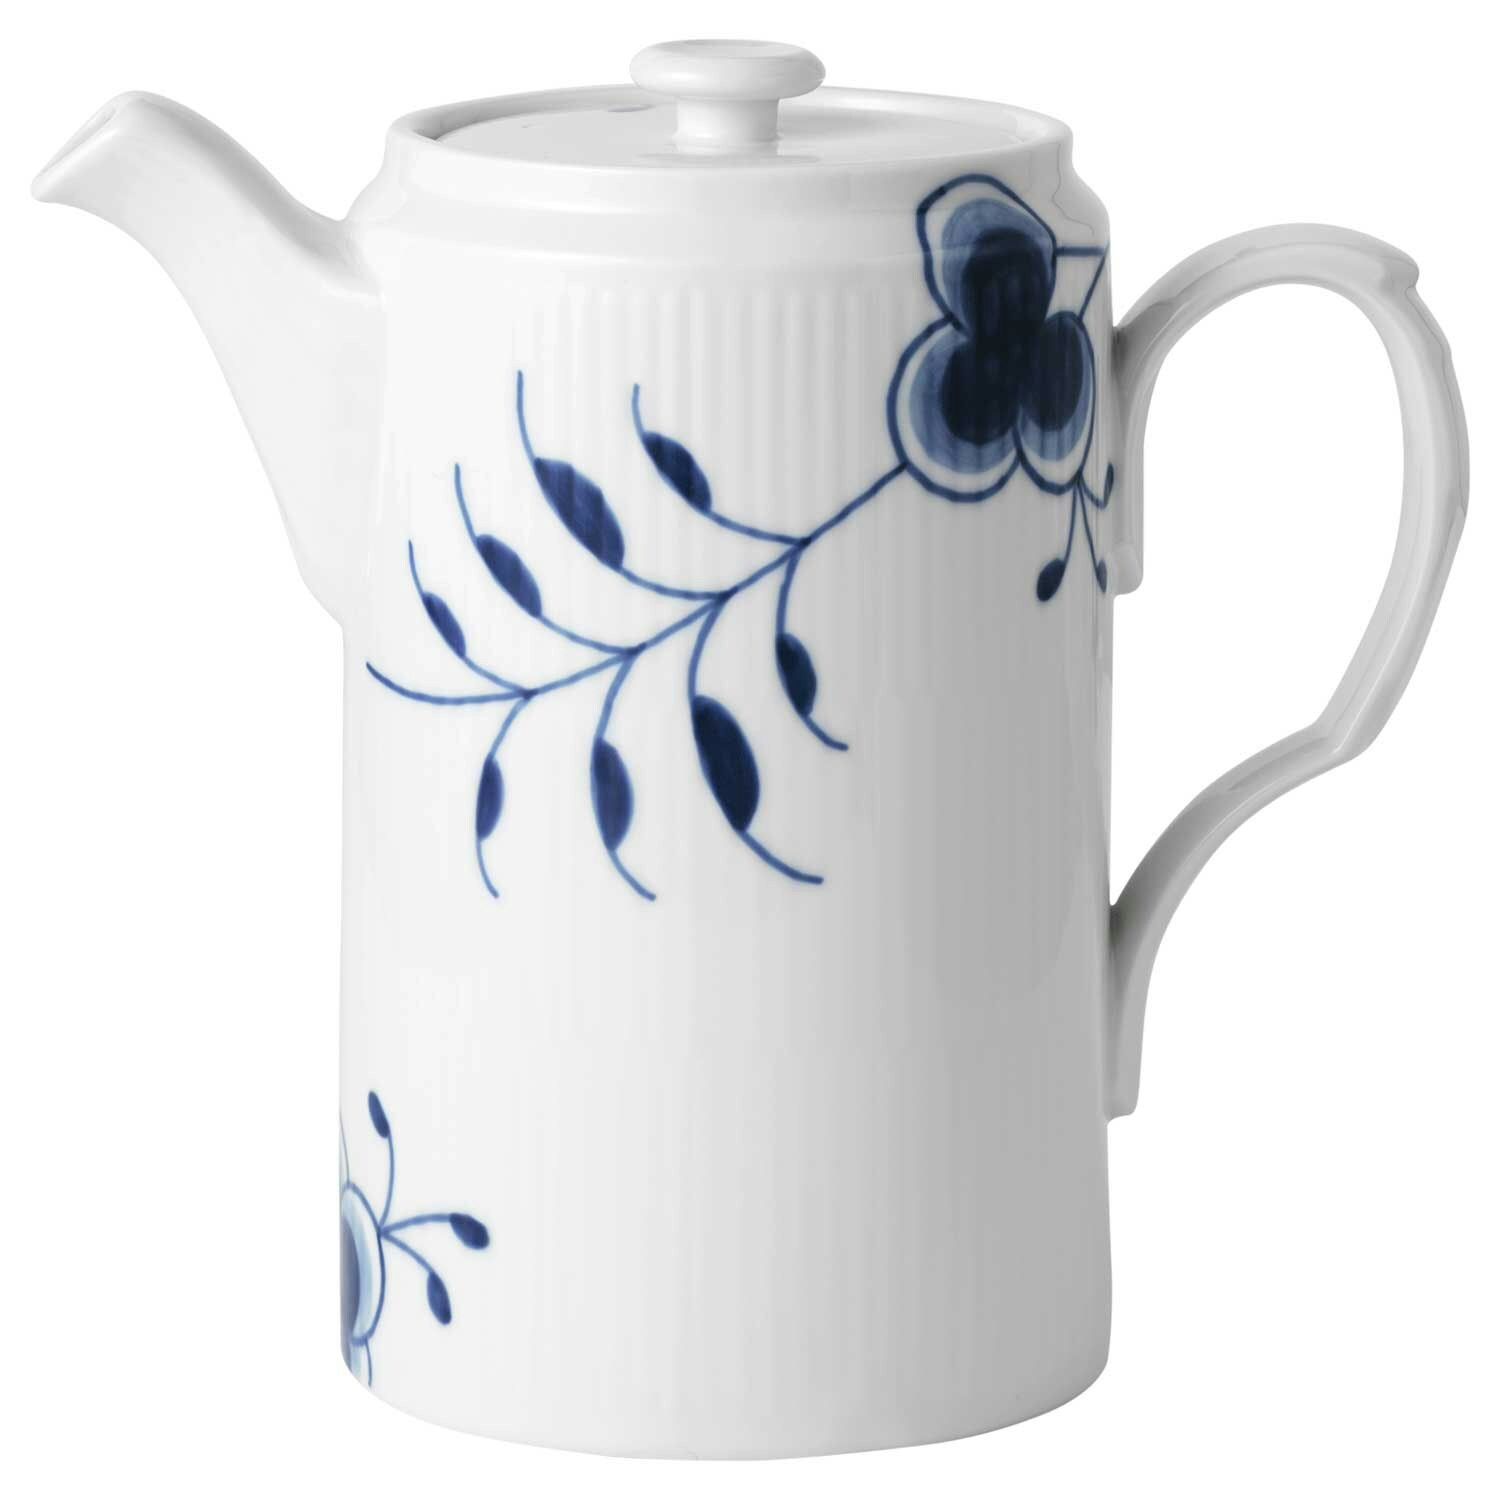 https://royaldesign.com/image/2/royal-copenhagen-blue-fluted-mega-jug-with-lid-11-l-0